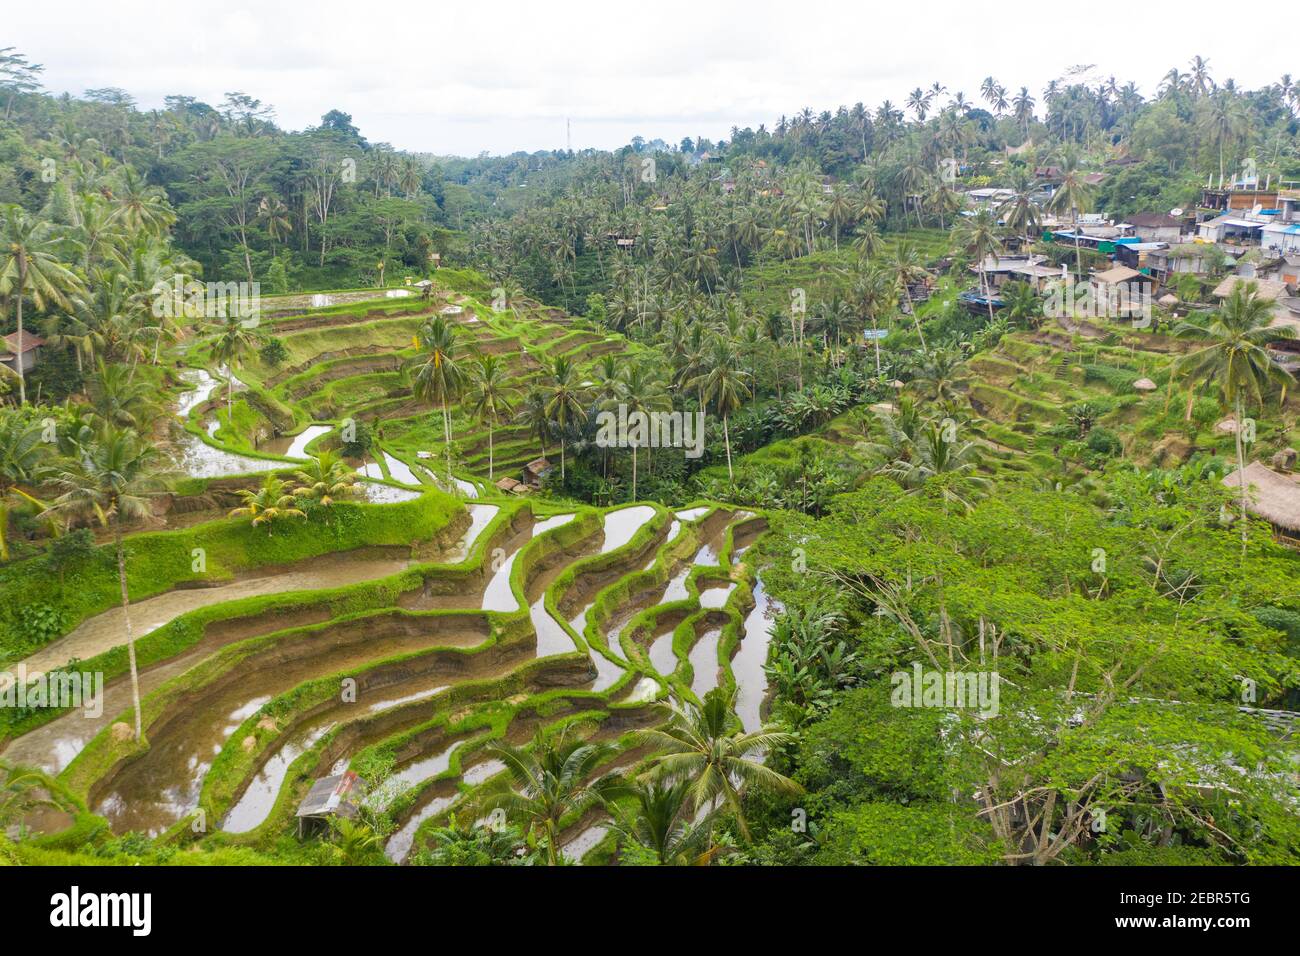 Luftaufnahme von terrassierten Reisfeldern in der Nähe von Dorf im Regenwald in Bali, Indonesien üppige grüne Reisfelder Plantagen mit Wasser auf Hügel im Dschungel Stockfoto